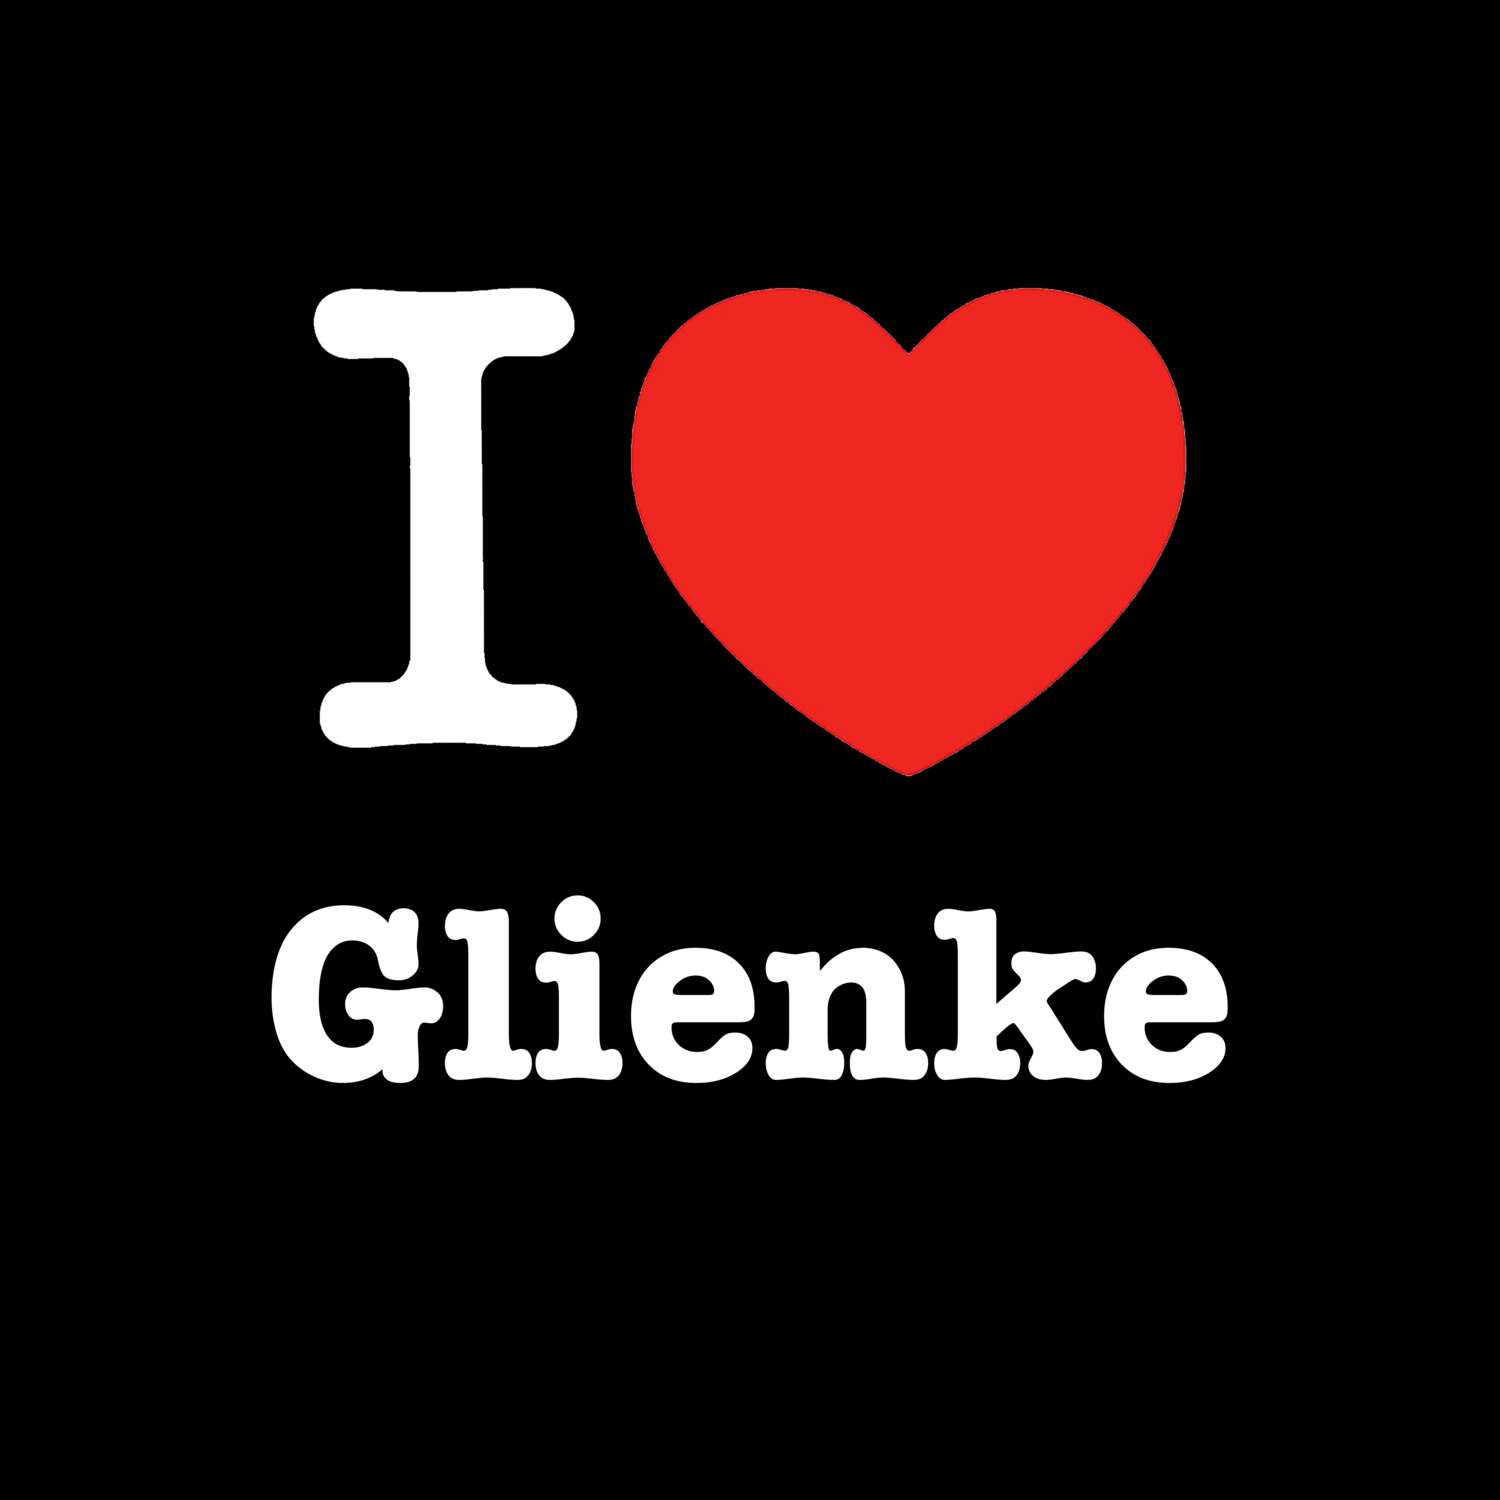 Glienke T-Shirt »I love«